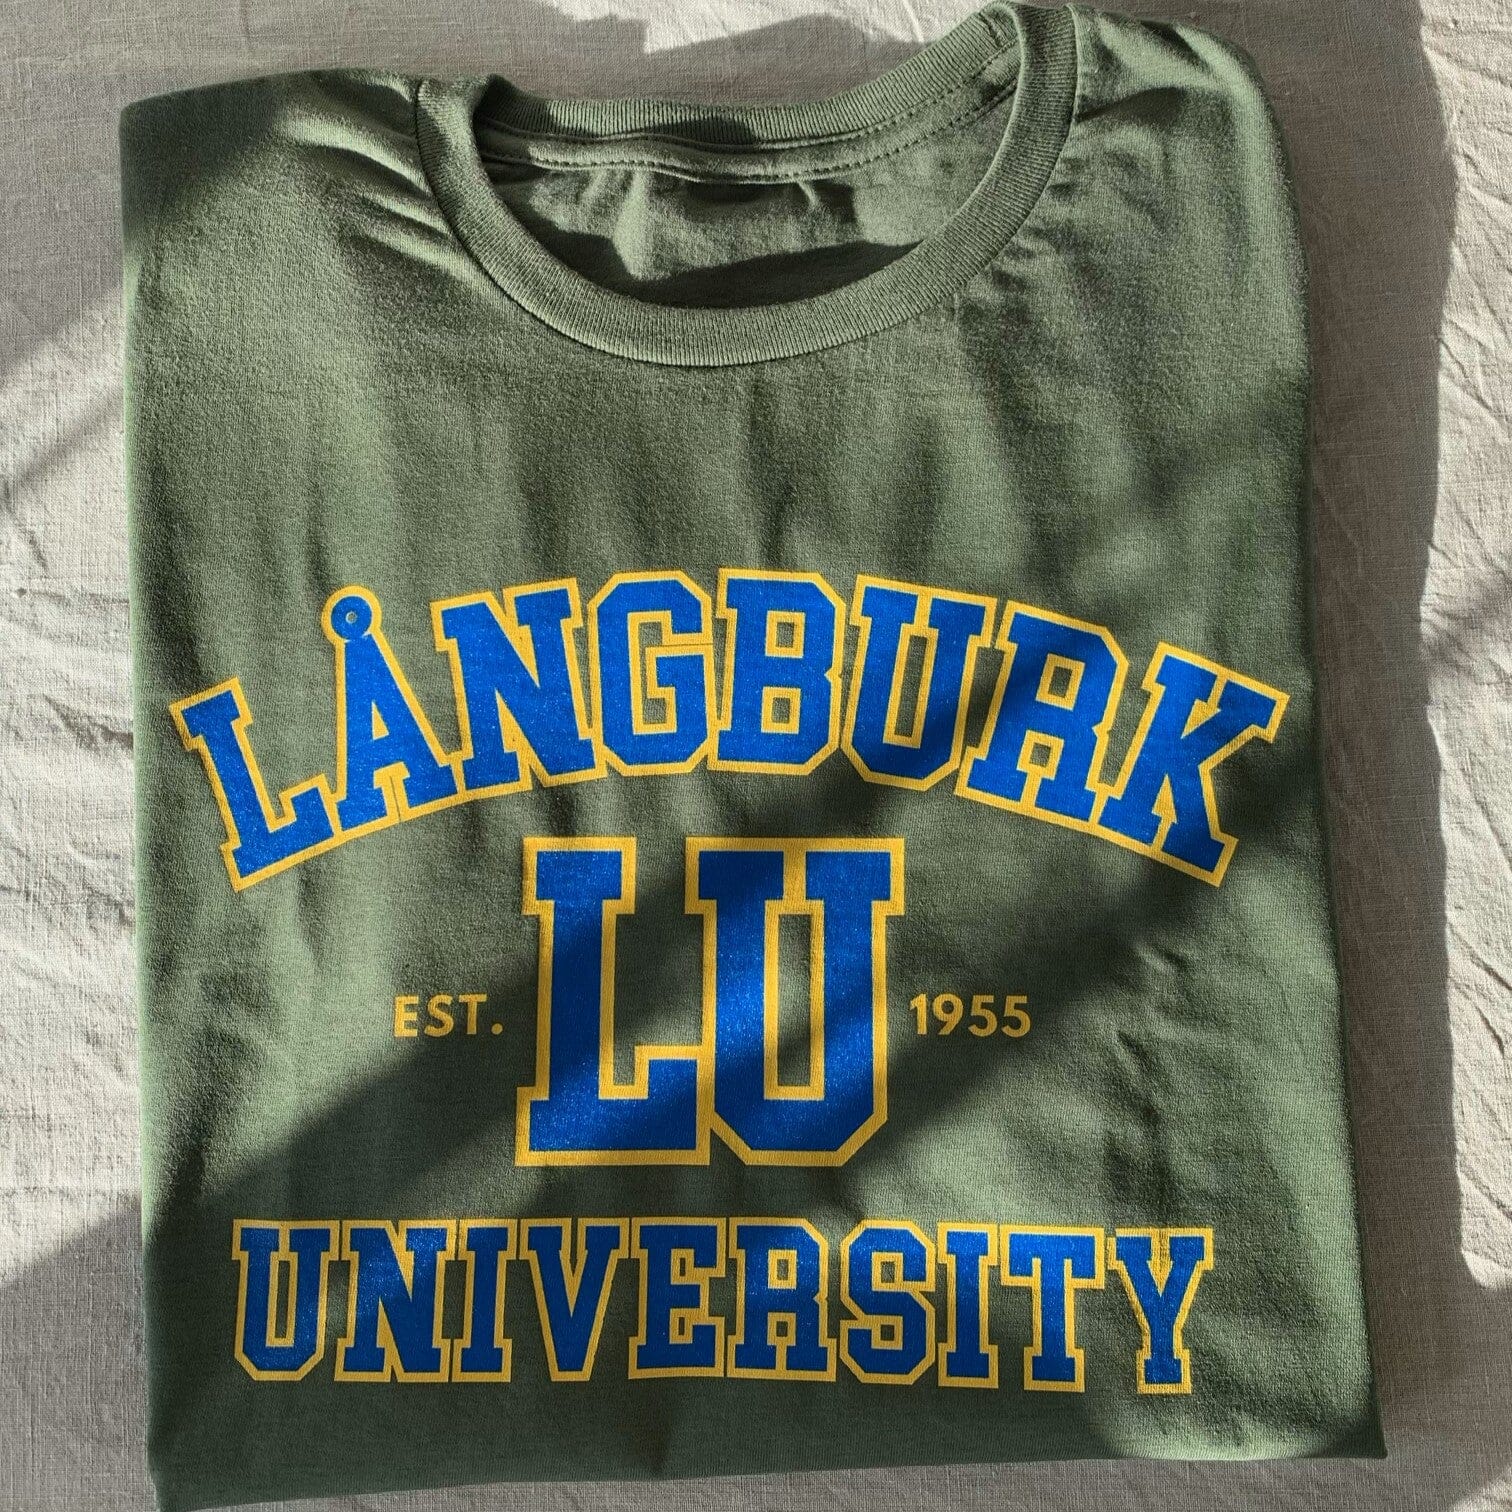 Långburk University - T-shirt 